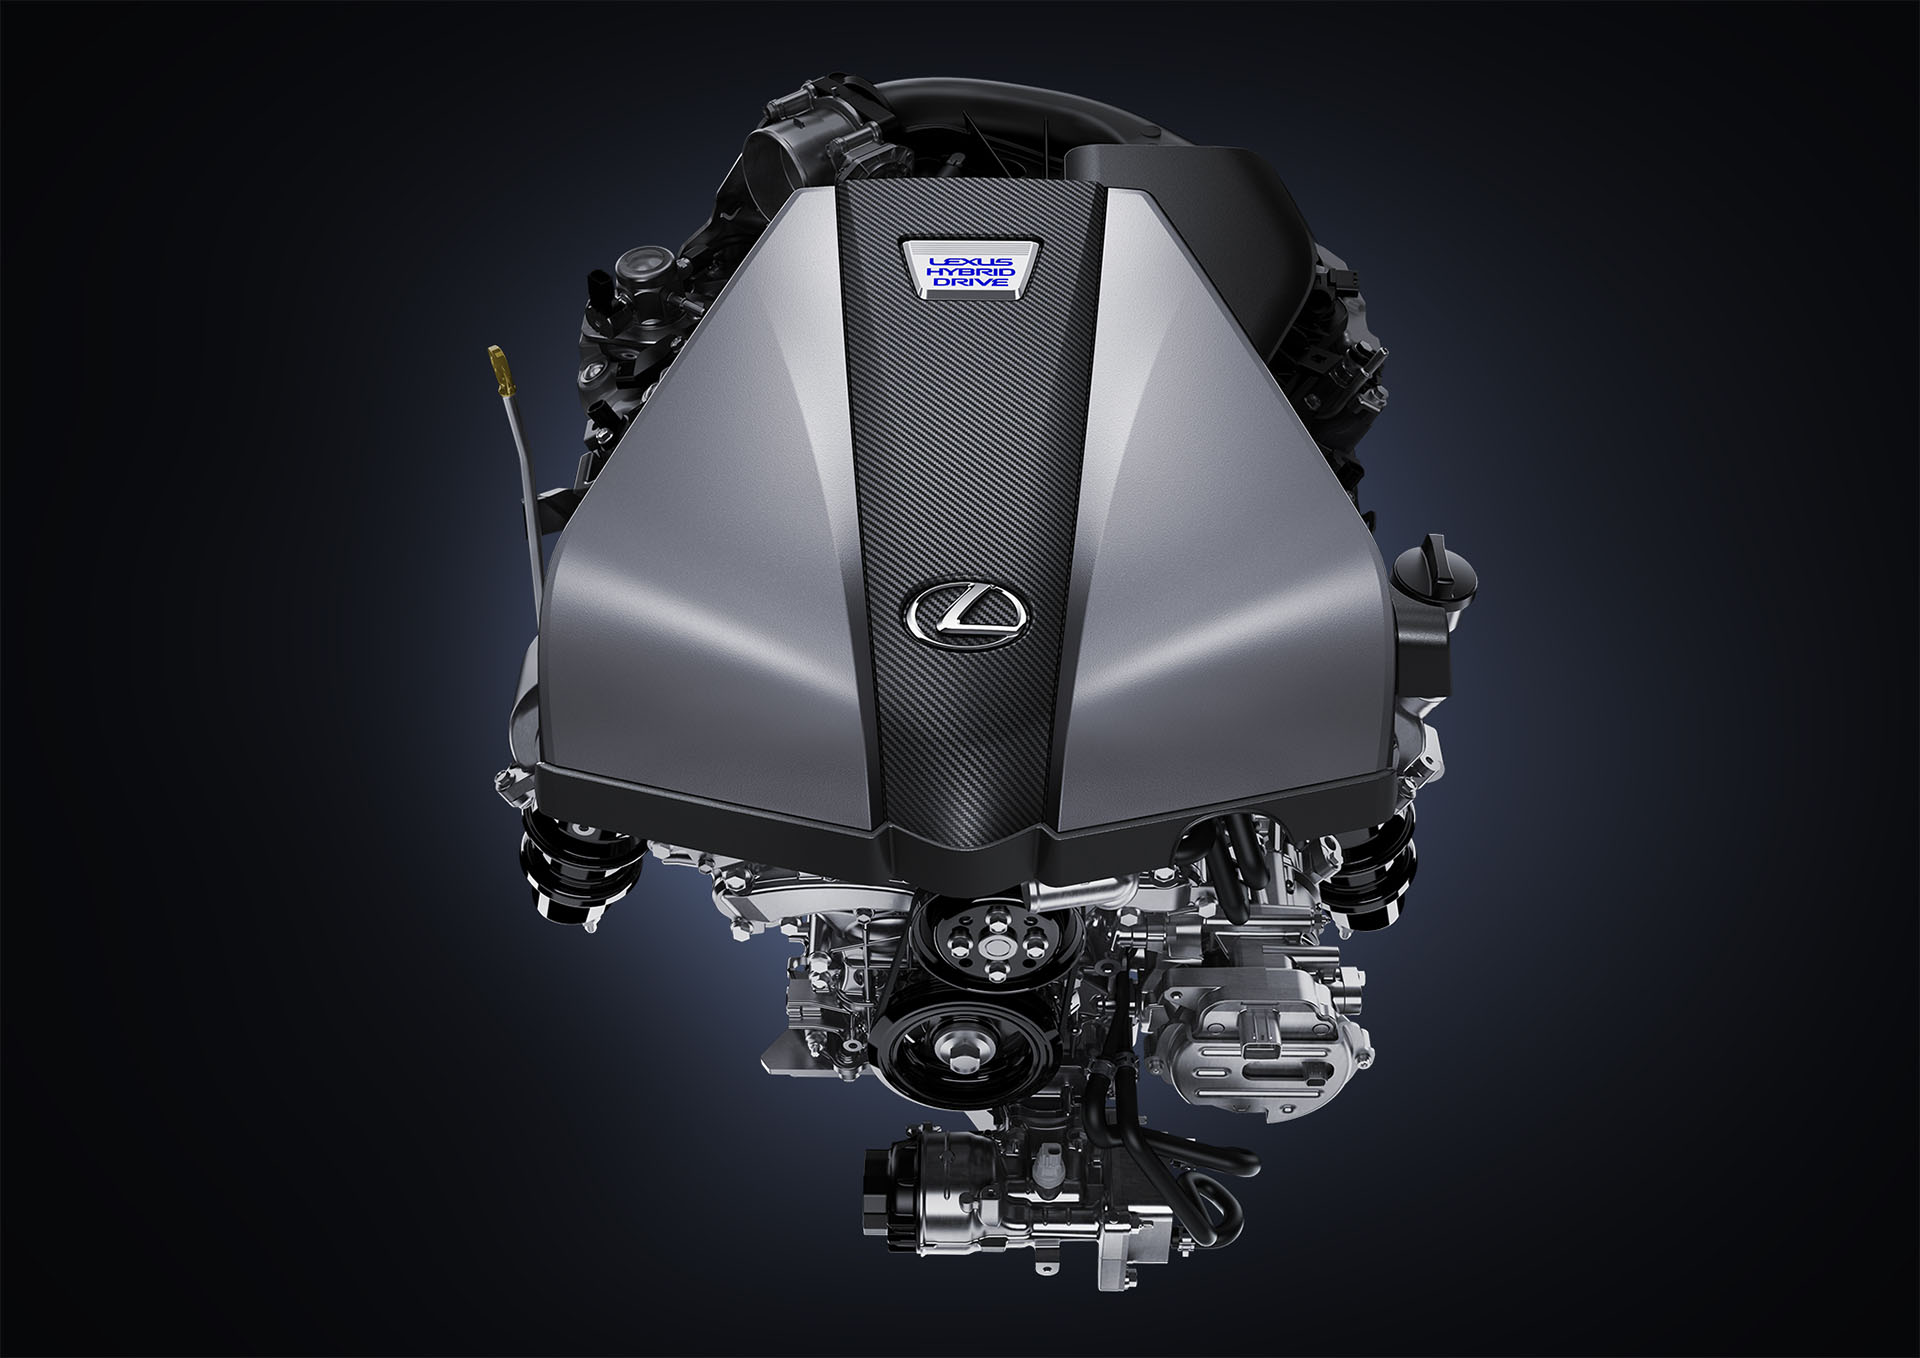 LEXUS LC500h マルチステージハイブリッドシステム、エンジン